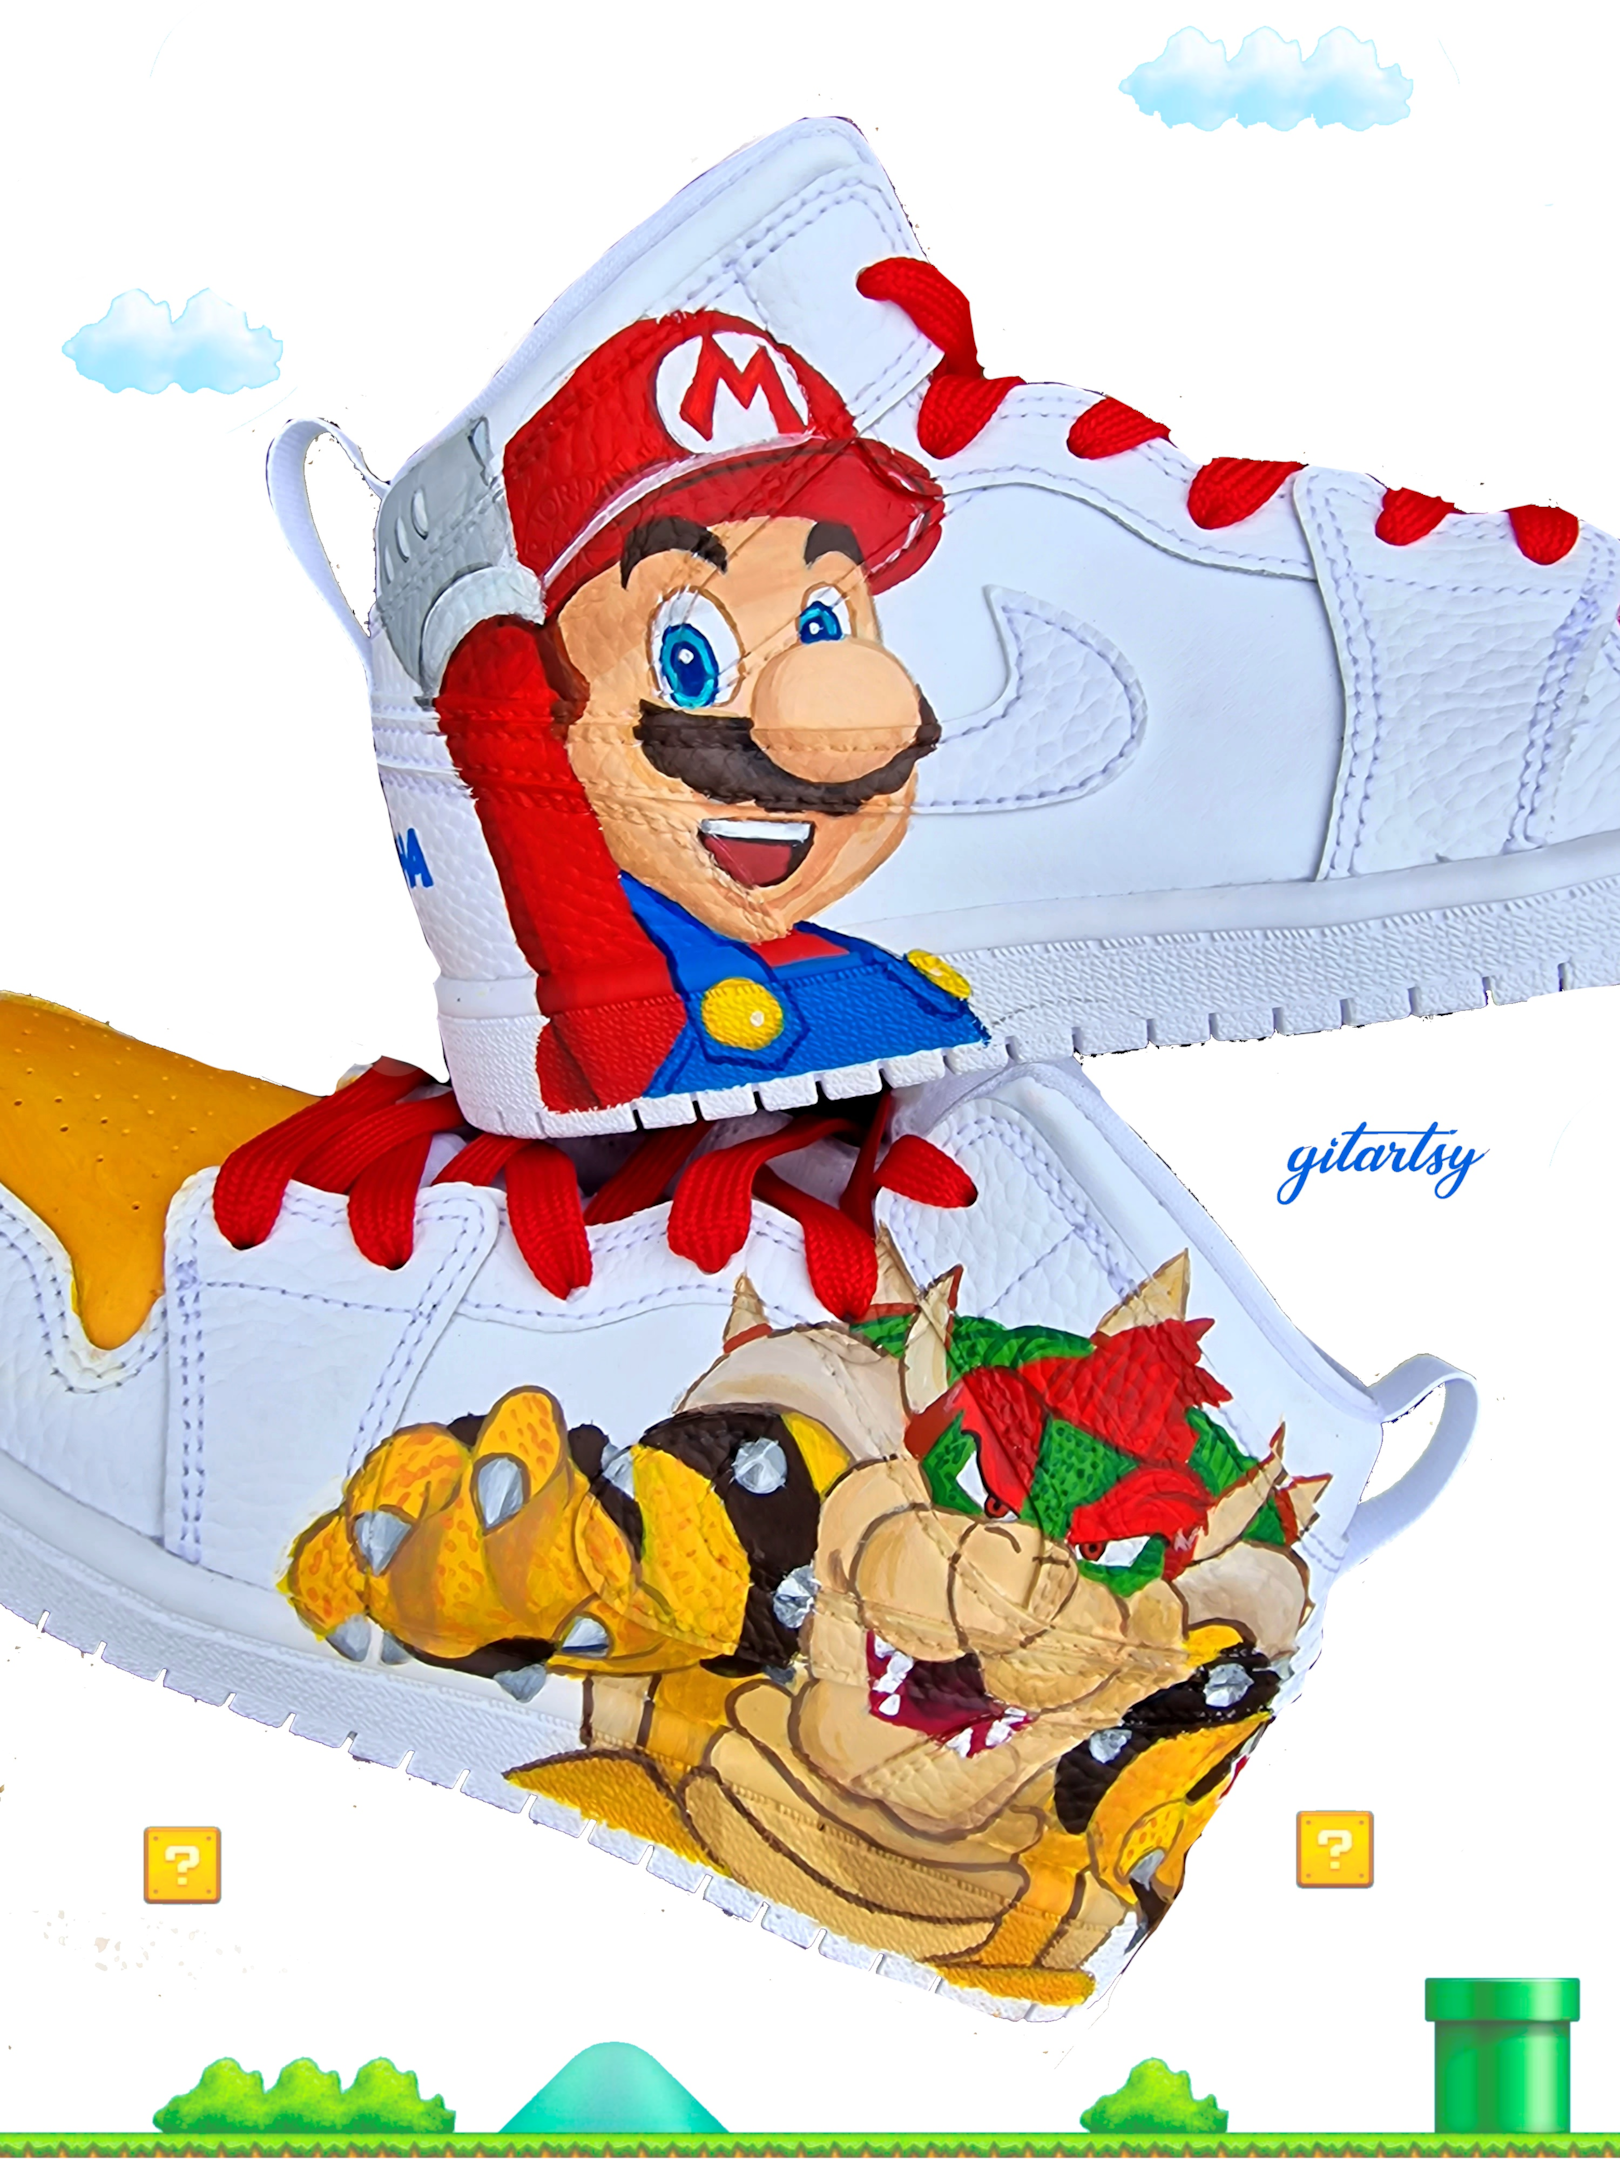 Super Mario - Kids custom hand painted Nike AF1 sneakers by Gitartsy 